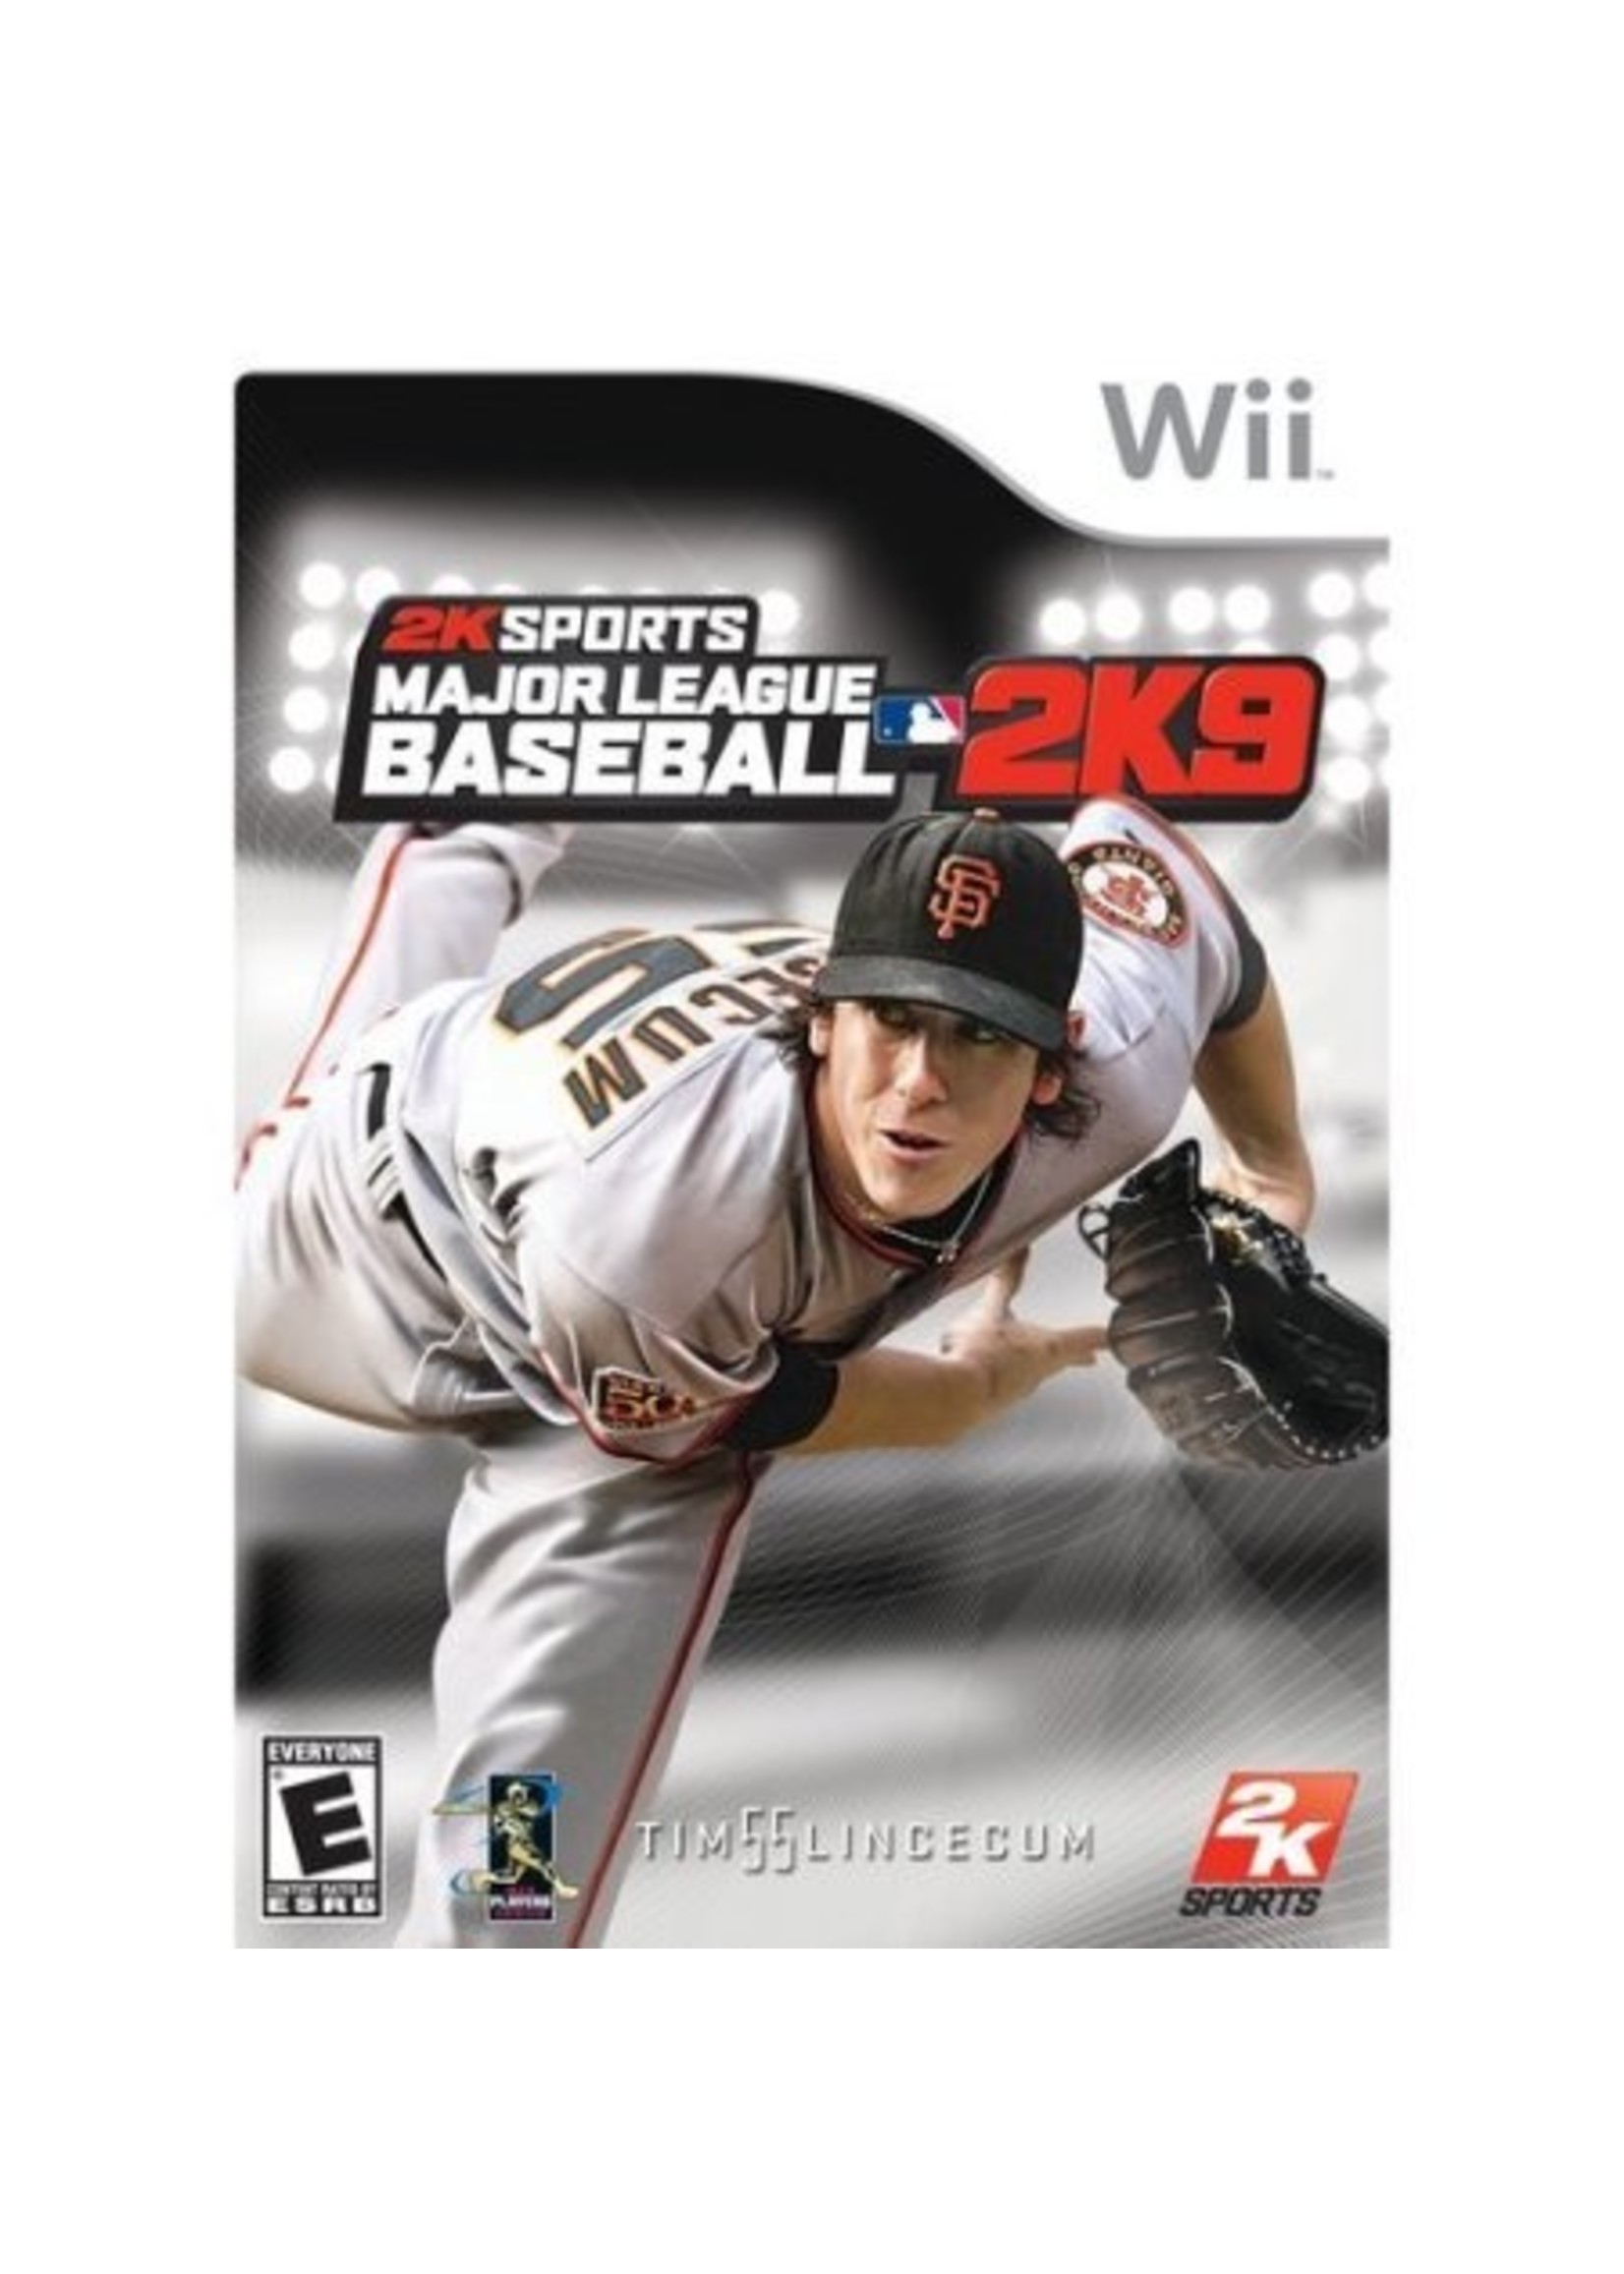 Nintendo Wii Major League Baseball 2K9